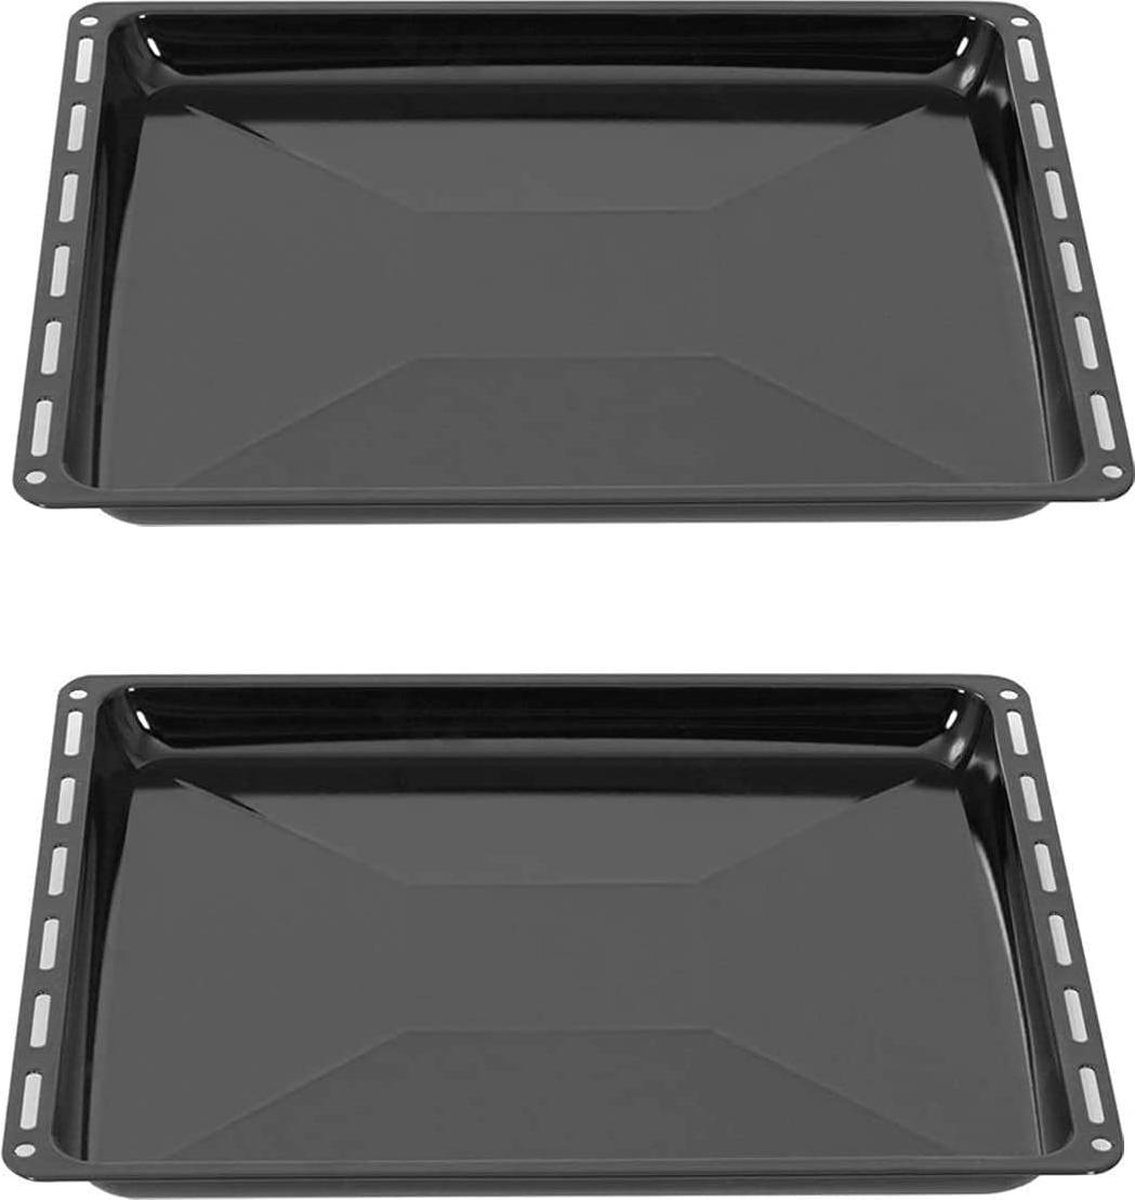 ICQN Oven Bakplaat Set - 2 stuks - 445 x 375 x 35 mm - Geëmailleerd